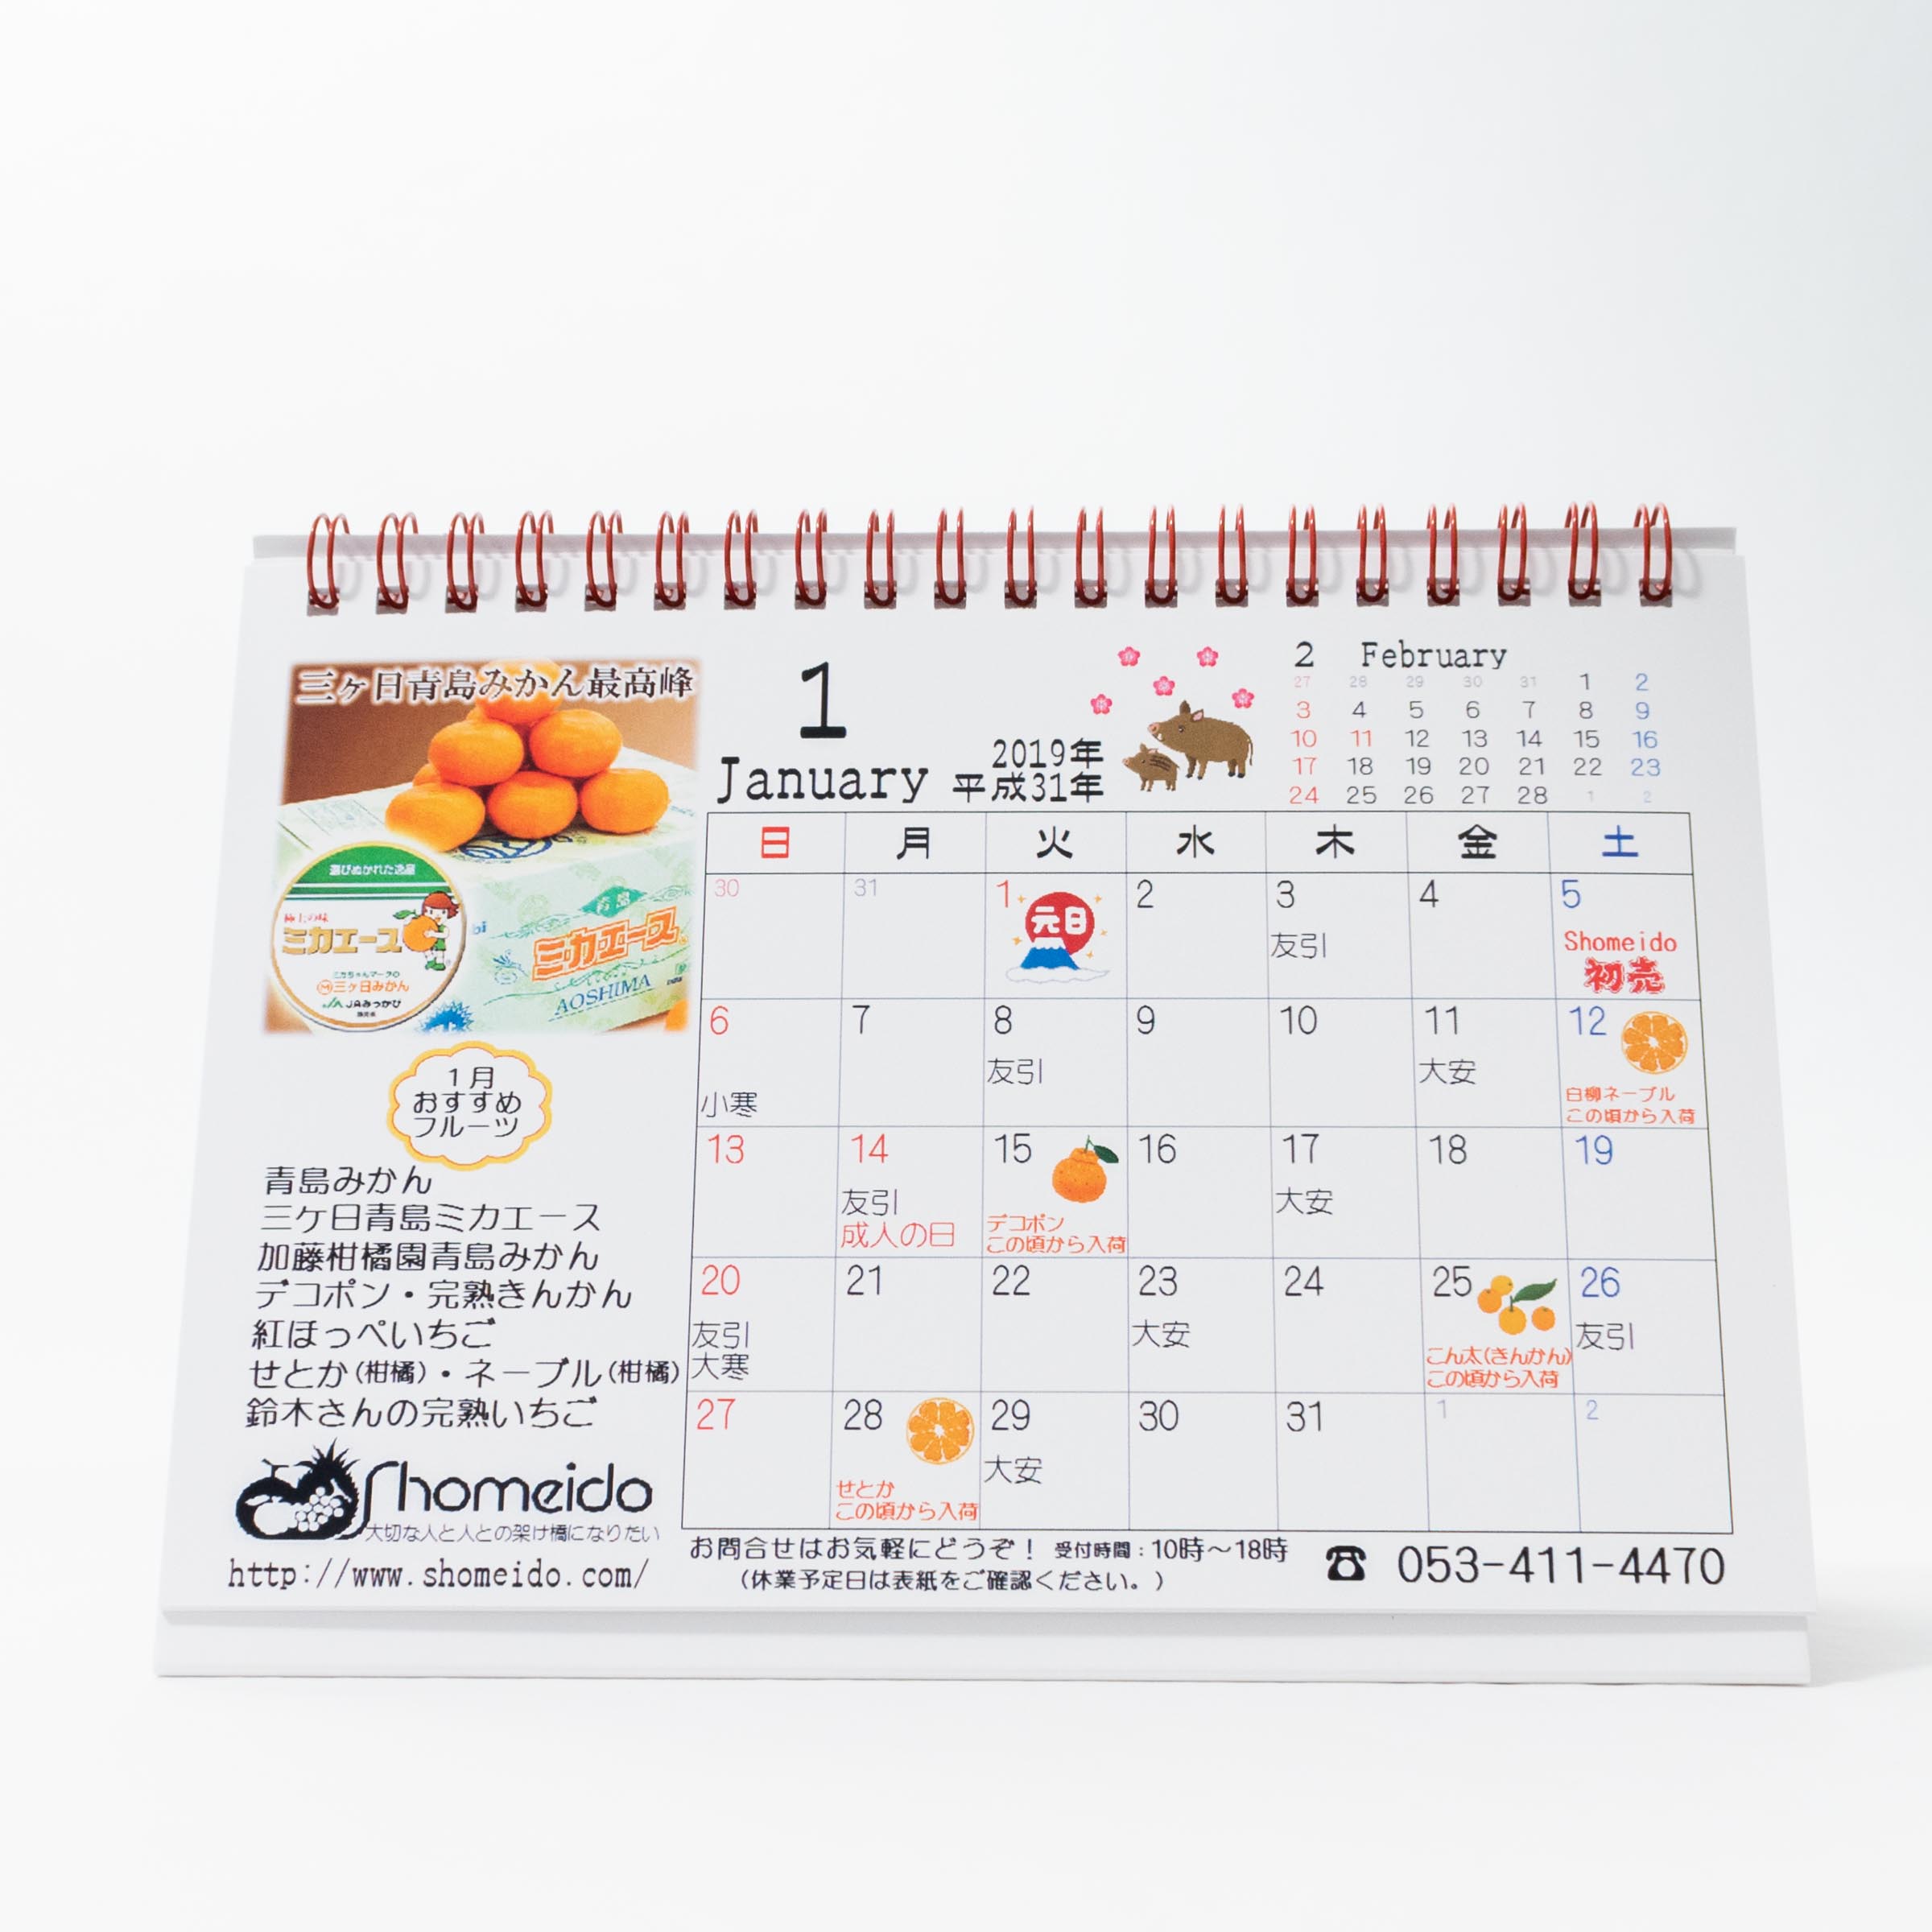 「株式会社正明堂 様」製作のオリジナルカレンダー ギャラリー写真1